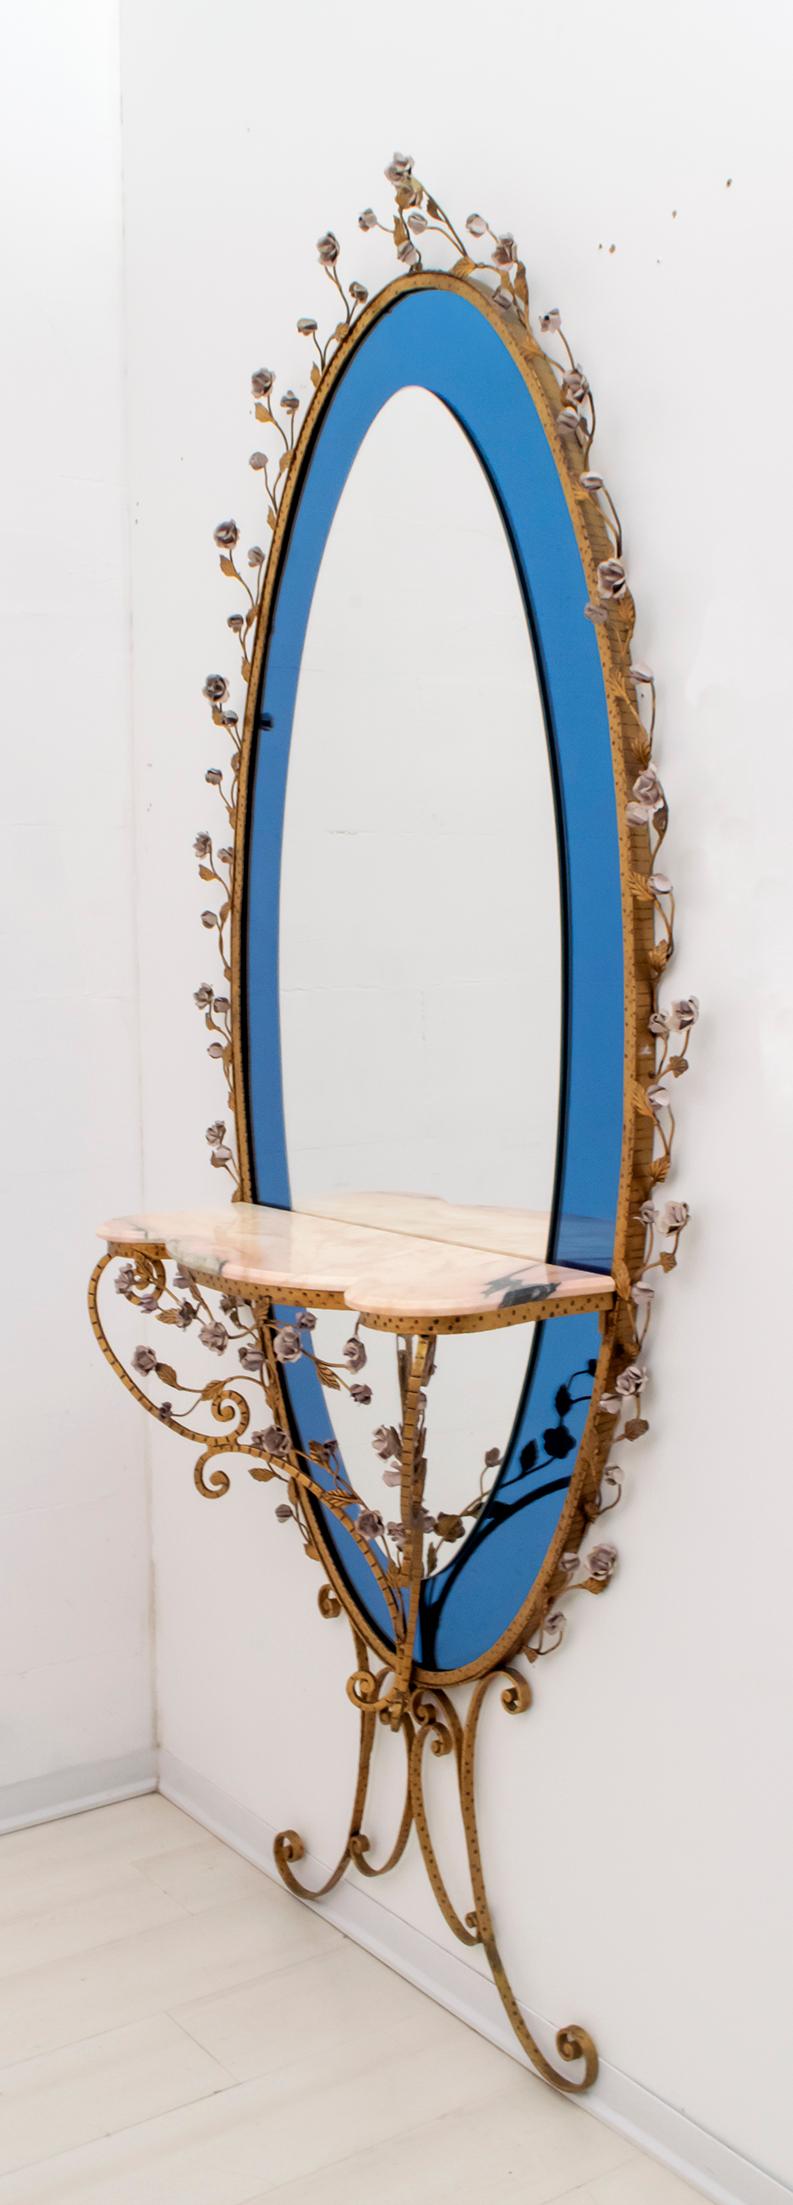 modern pier mirror